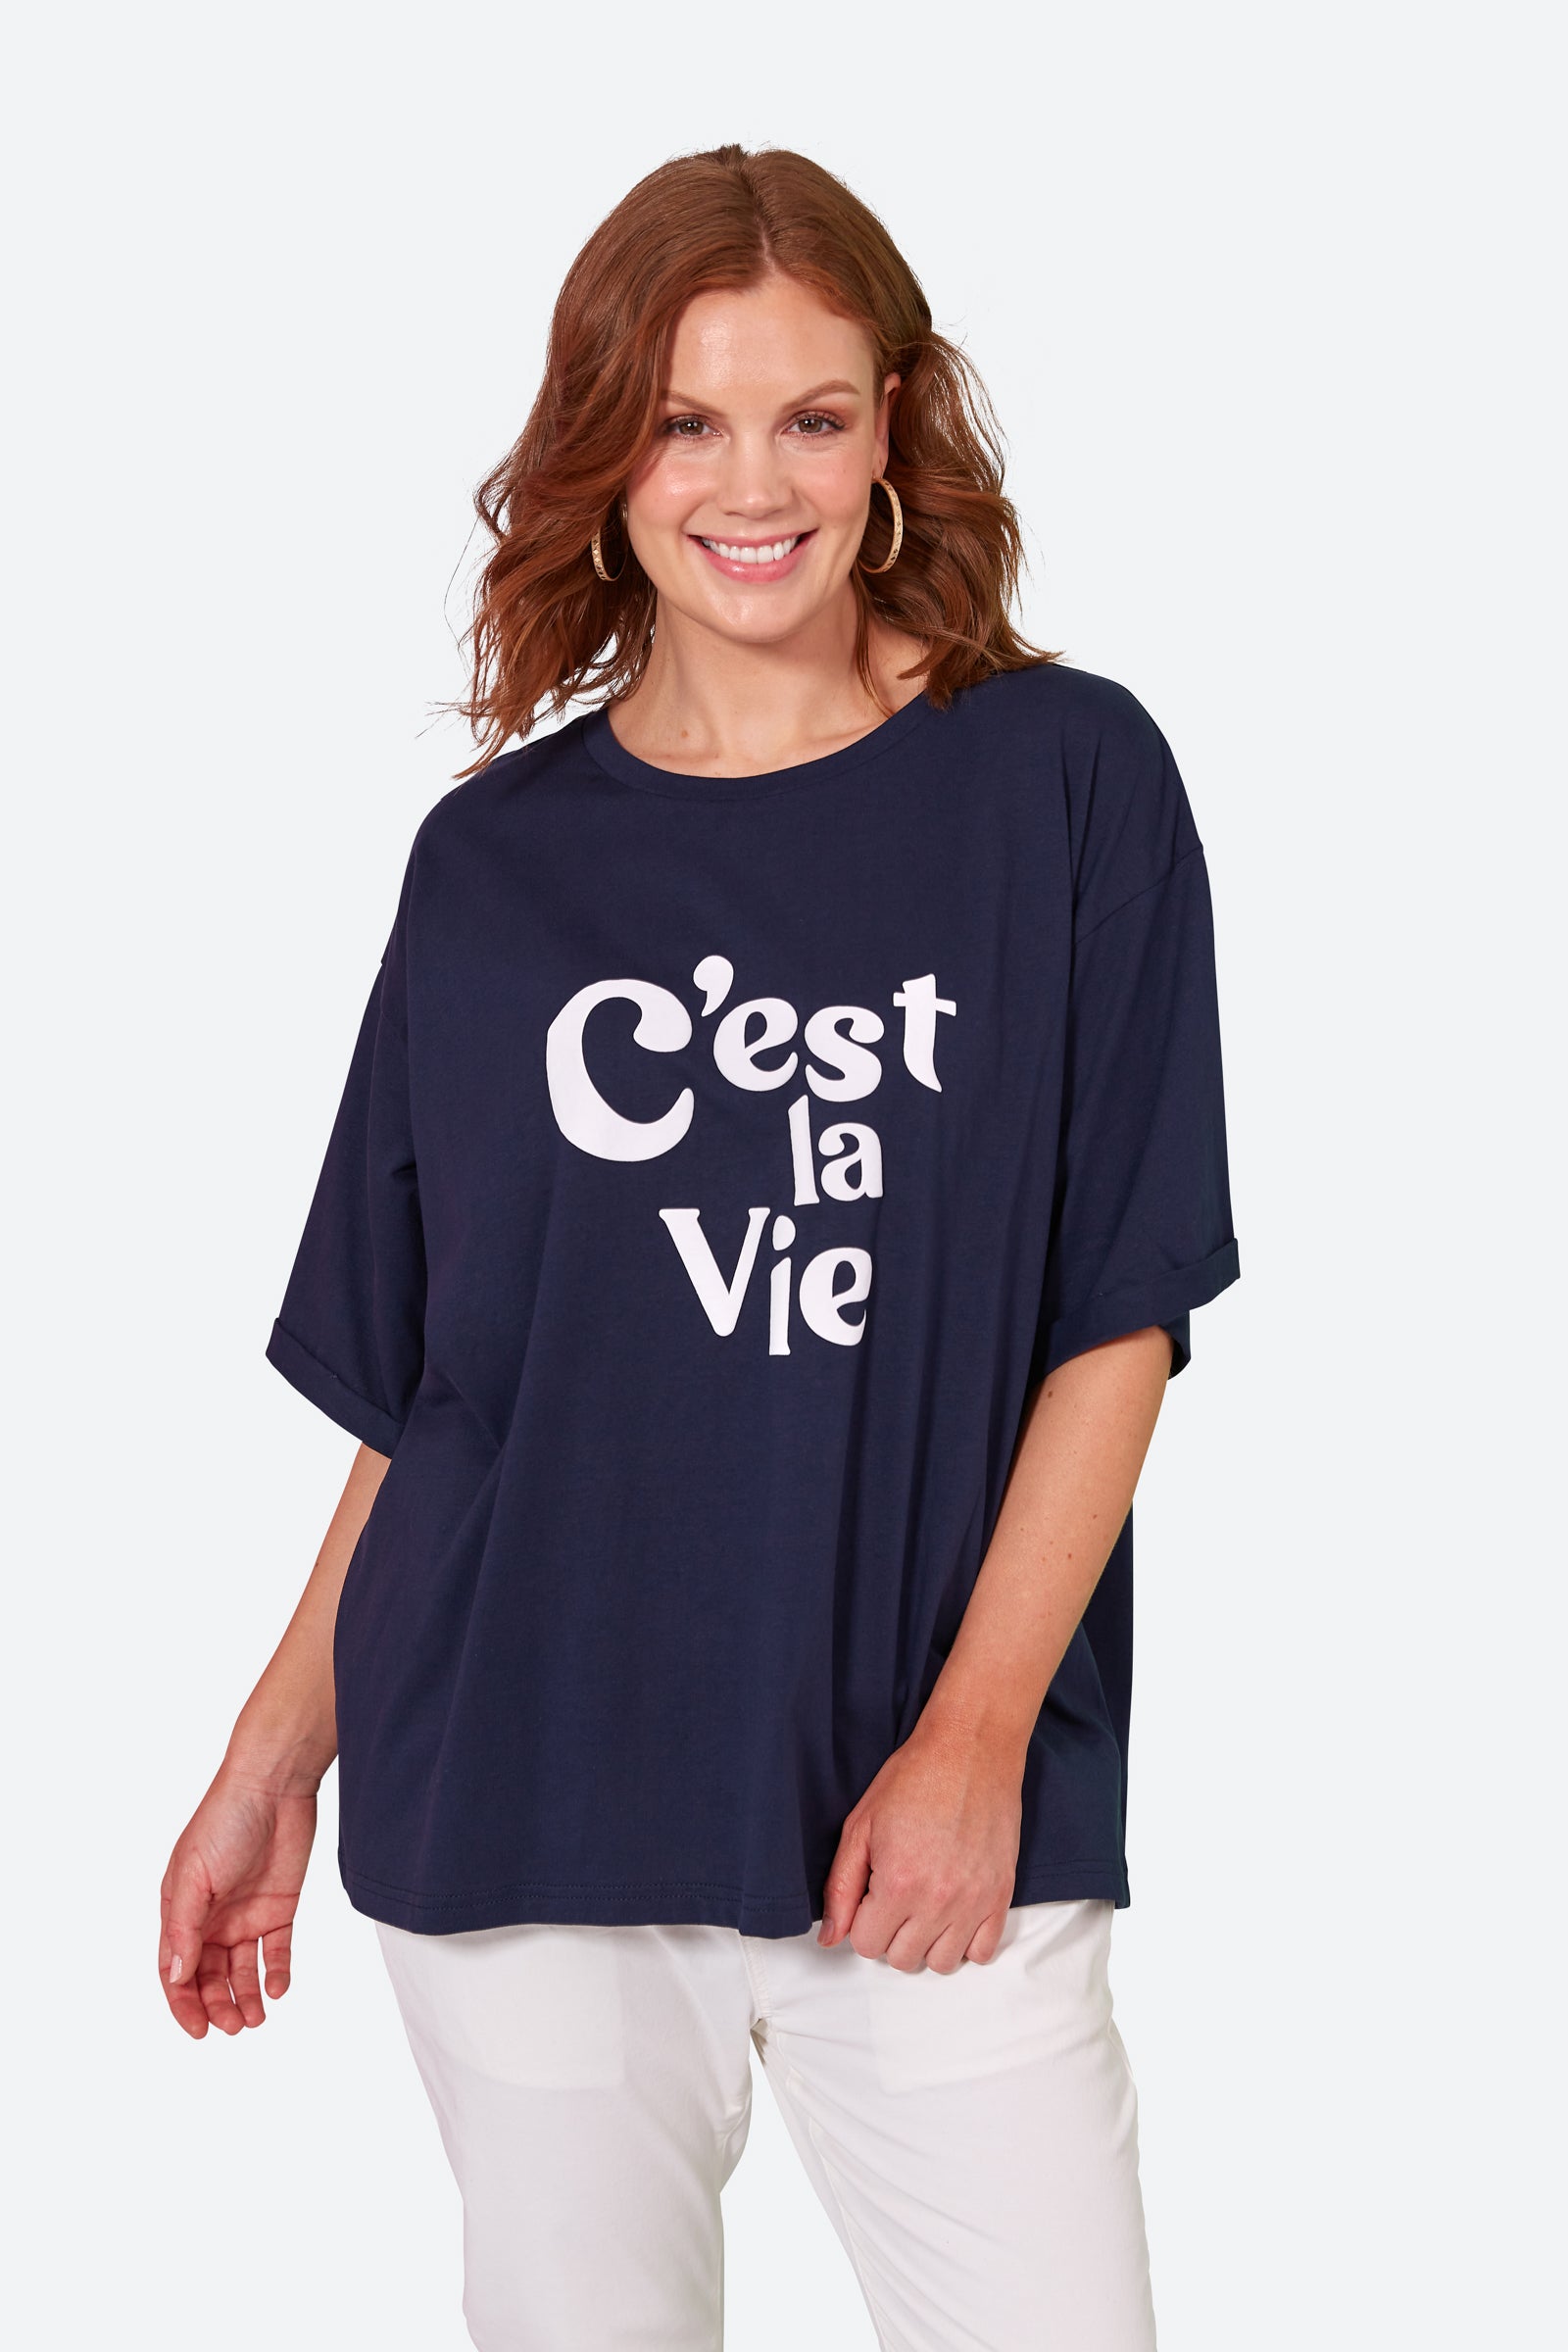 C'est La Vie Tshirt - Sapphire - eb&ive Clothing - Top Tshirt S/S One Size